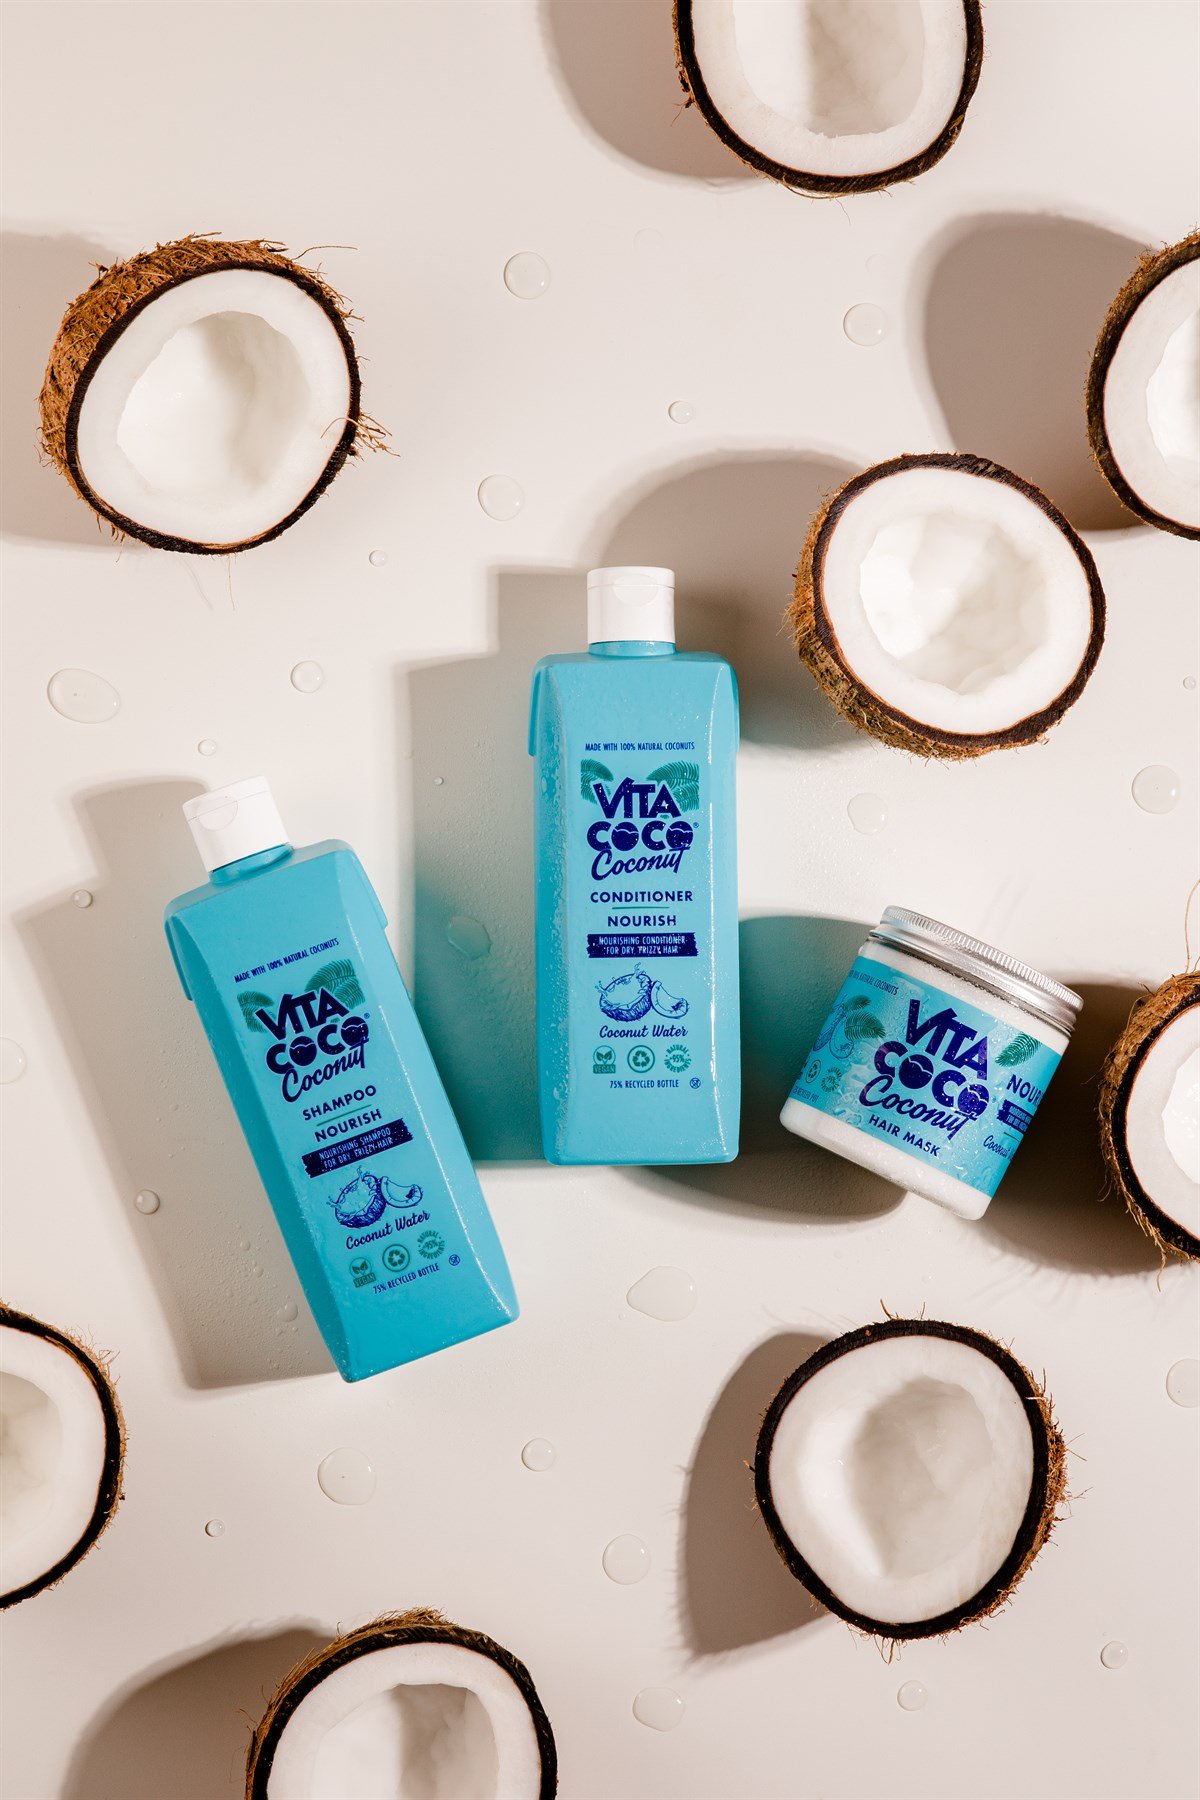 Vita Coco Shampoo Dry Hair (Kuru ve Kıvırcık Saçlar İçin Şampuan)